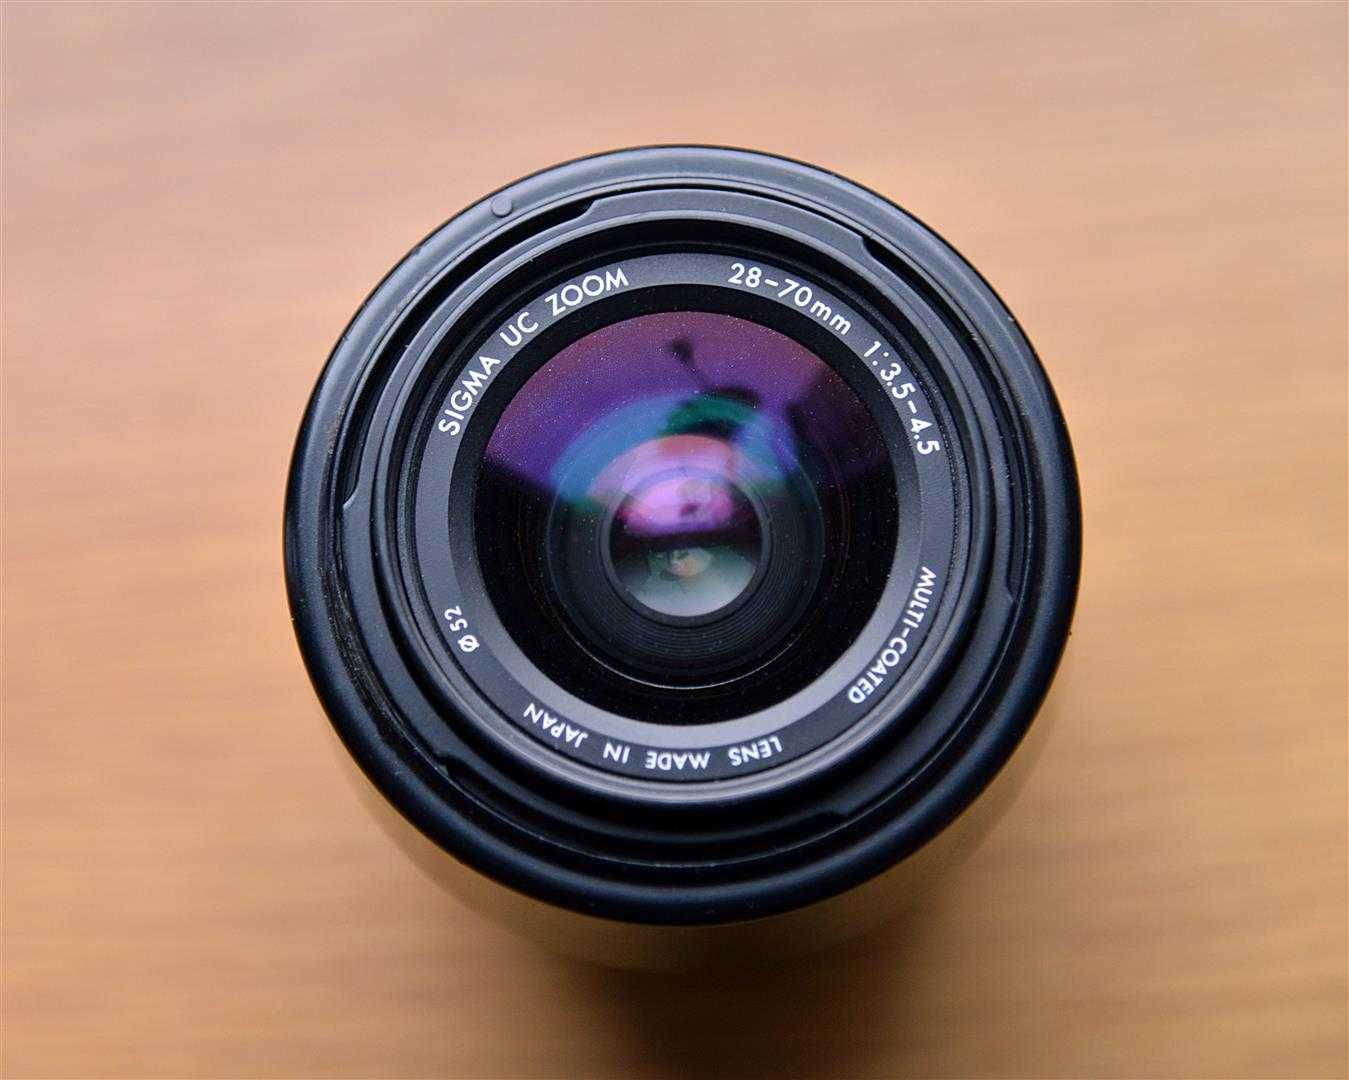 Nikon D90 z obiektywem 18-125mm + gratis obiektyw 28-70mm